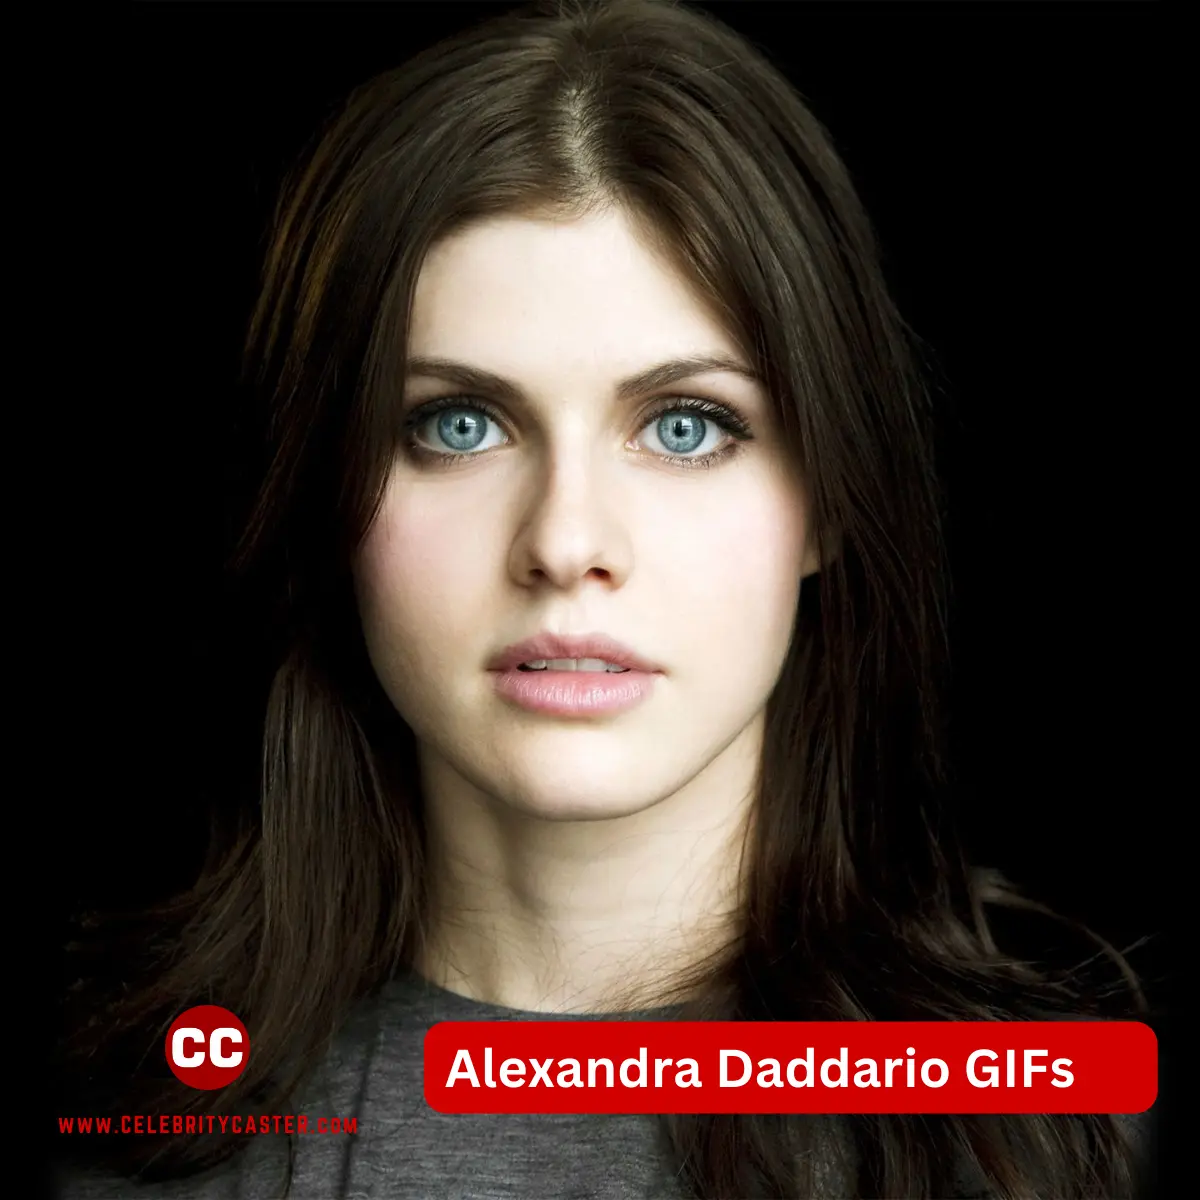 Alexandra Daddario GIFs